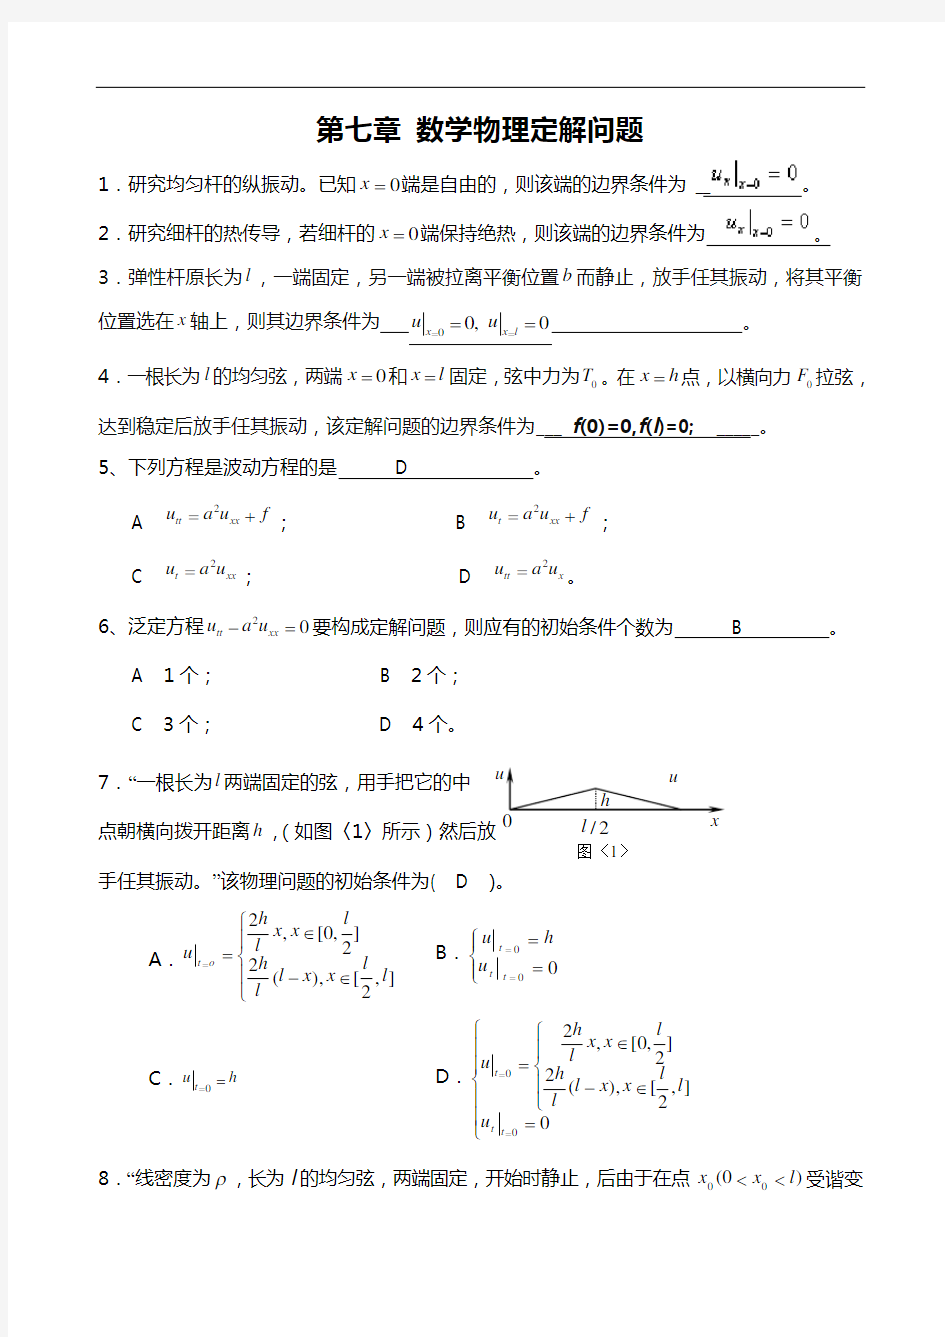 数学物理方法第二次作业答案解析